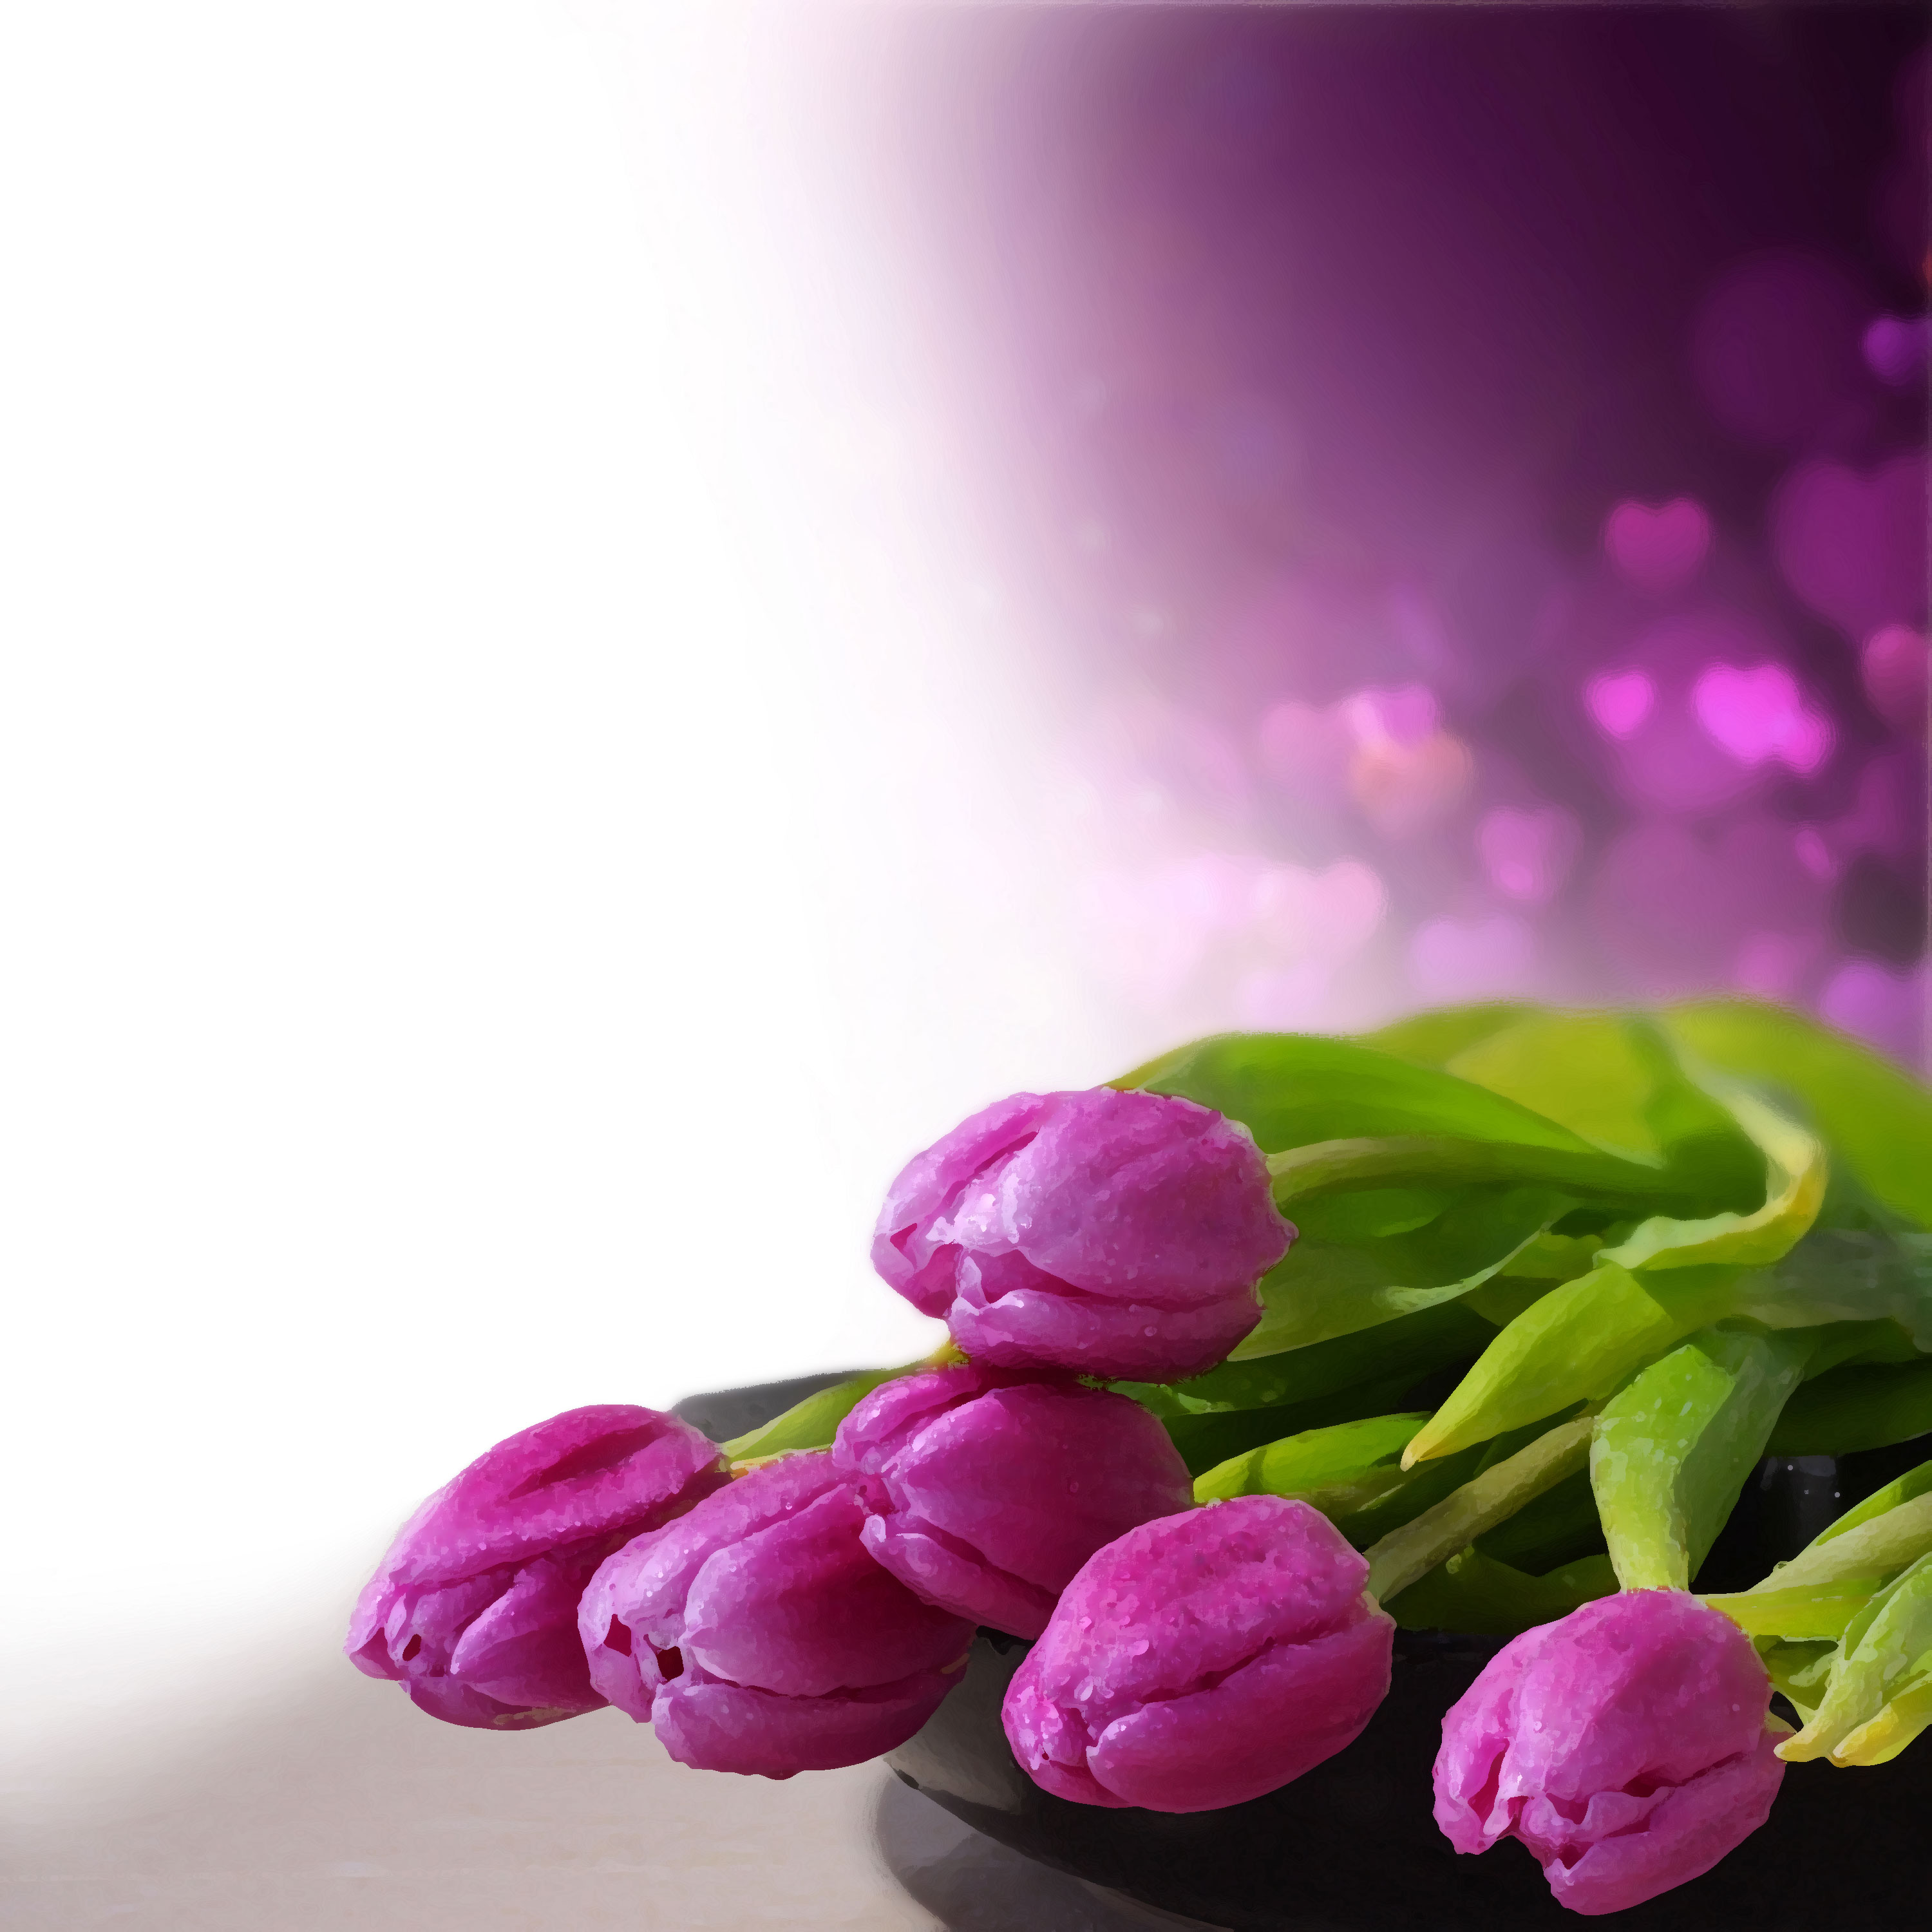 紫色の花のイラスト フリー素材 背景 壁紙no 506 紫のチューリップ 緑葉